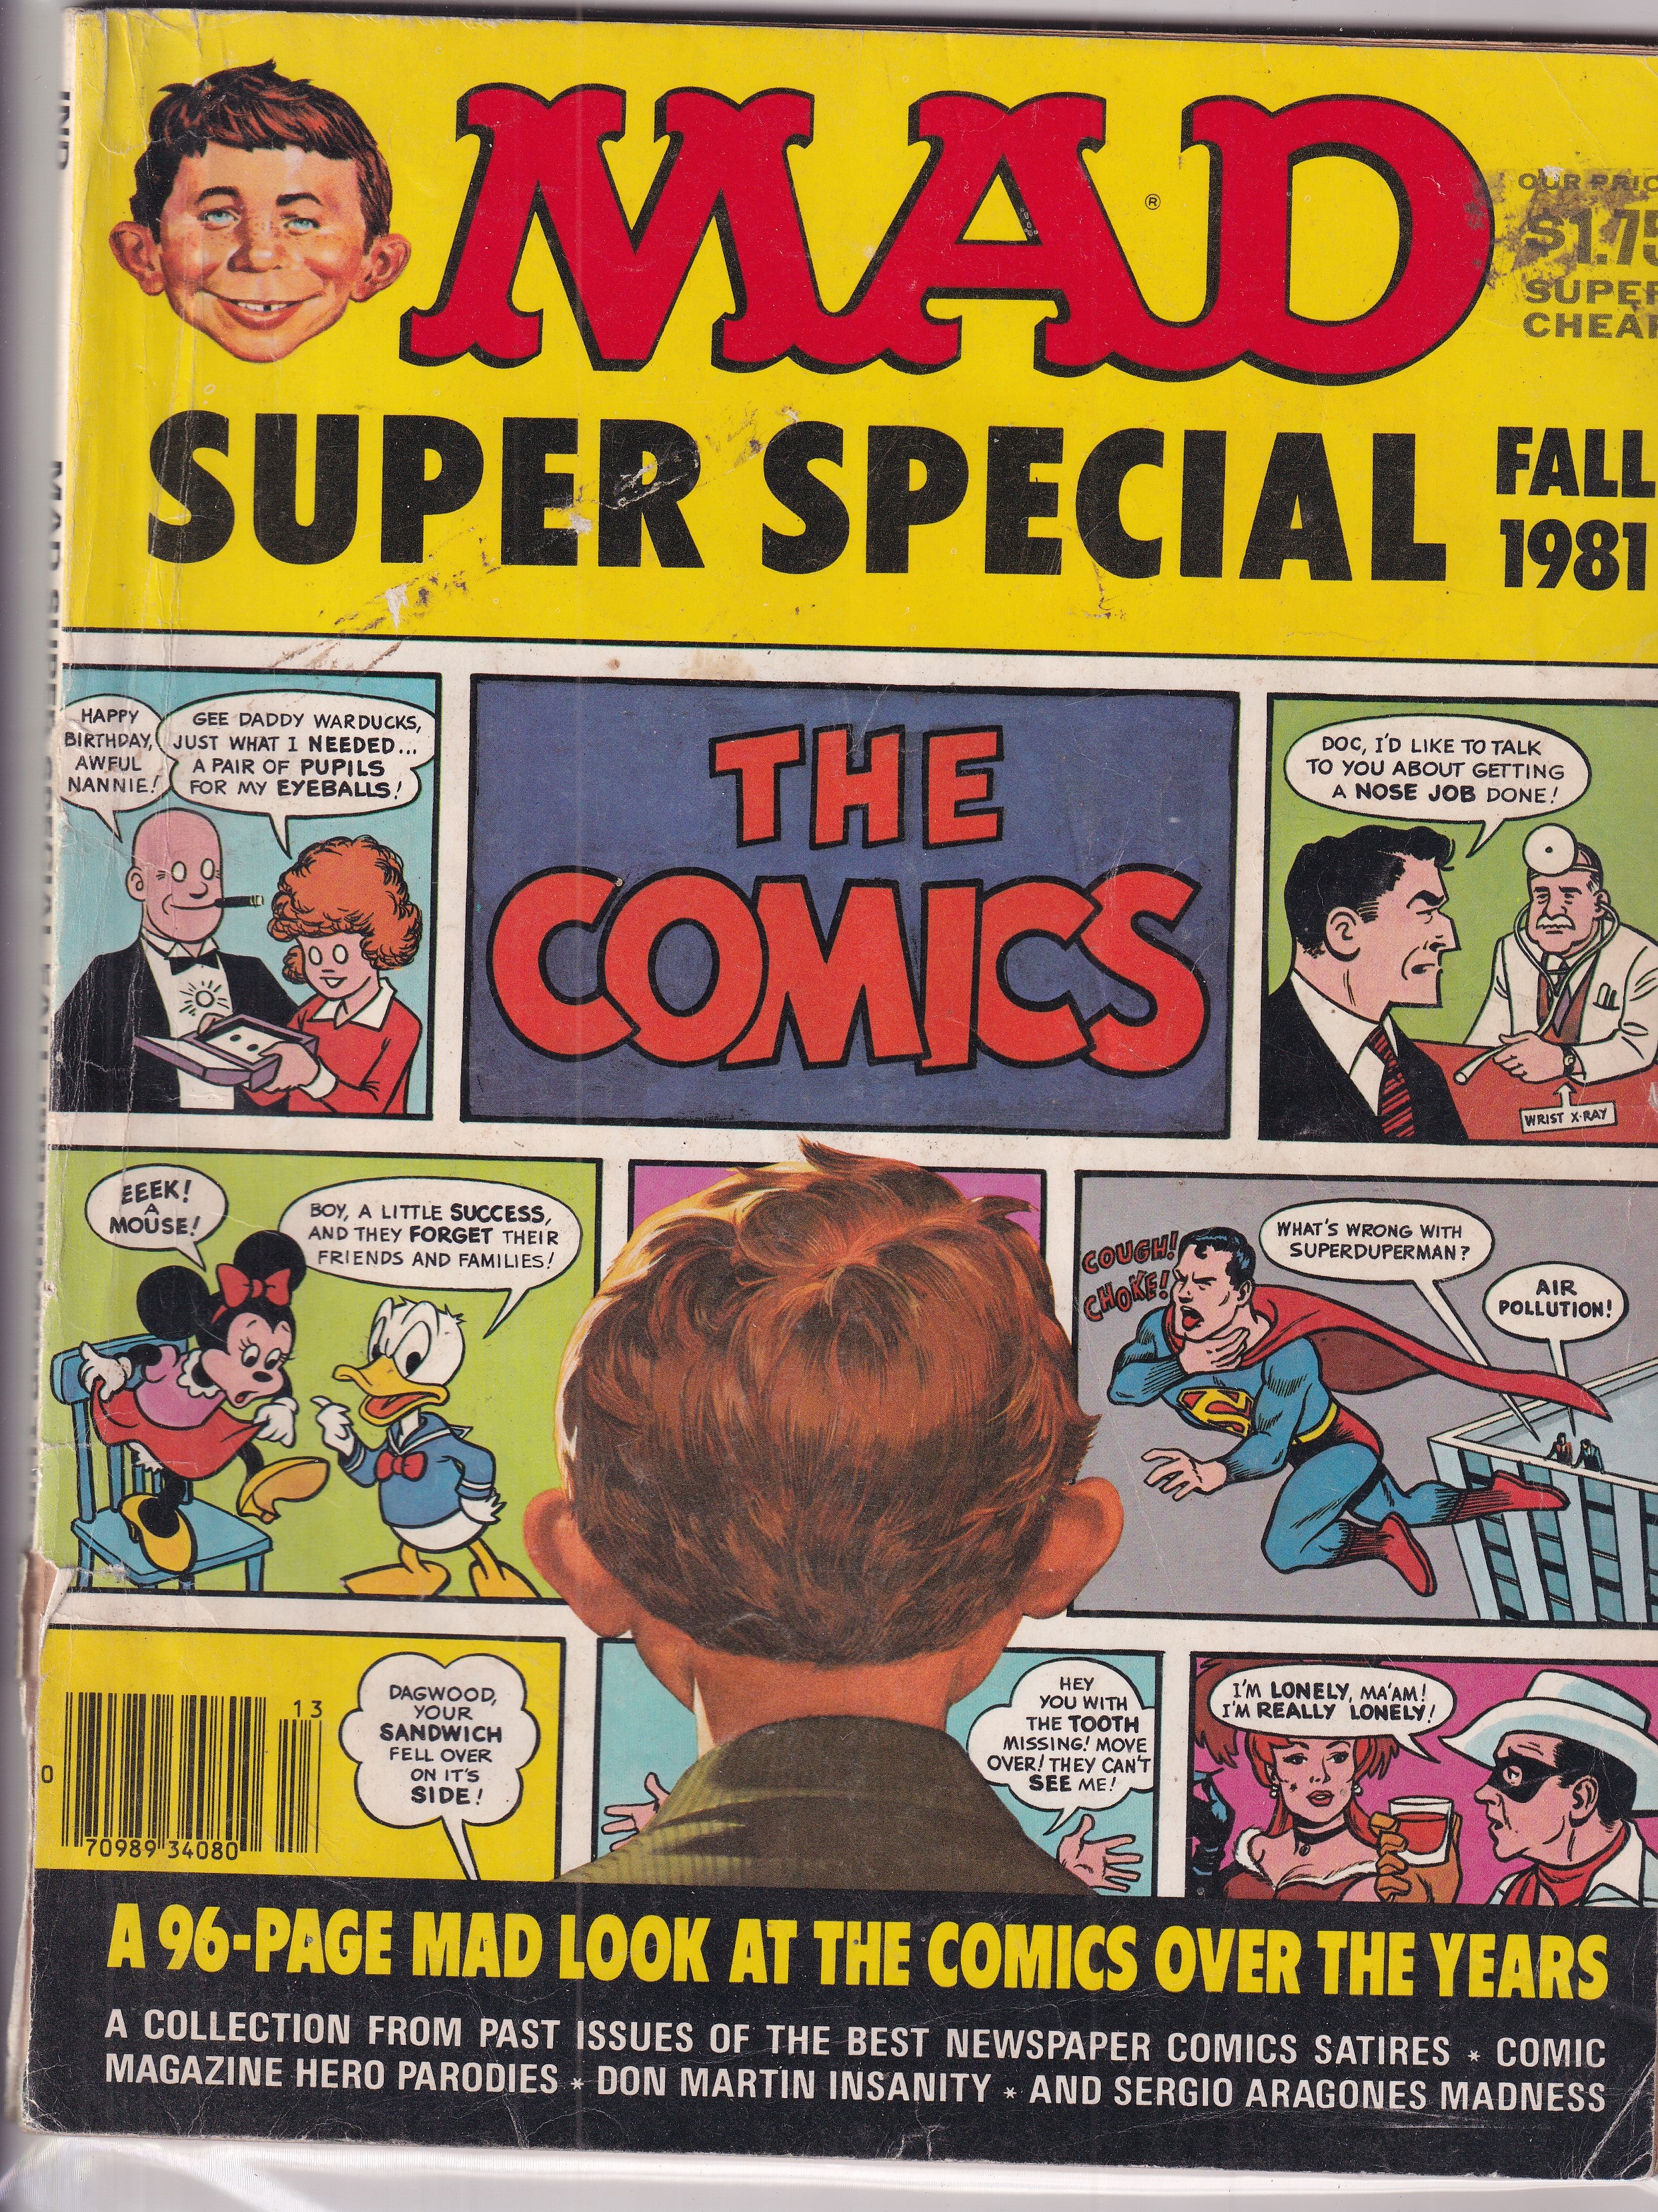 MAD SUPER SPECIAL 1981 #36 - Slab City Comics 